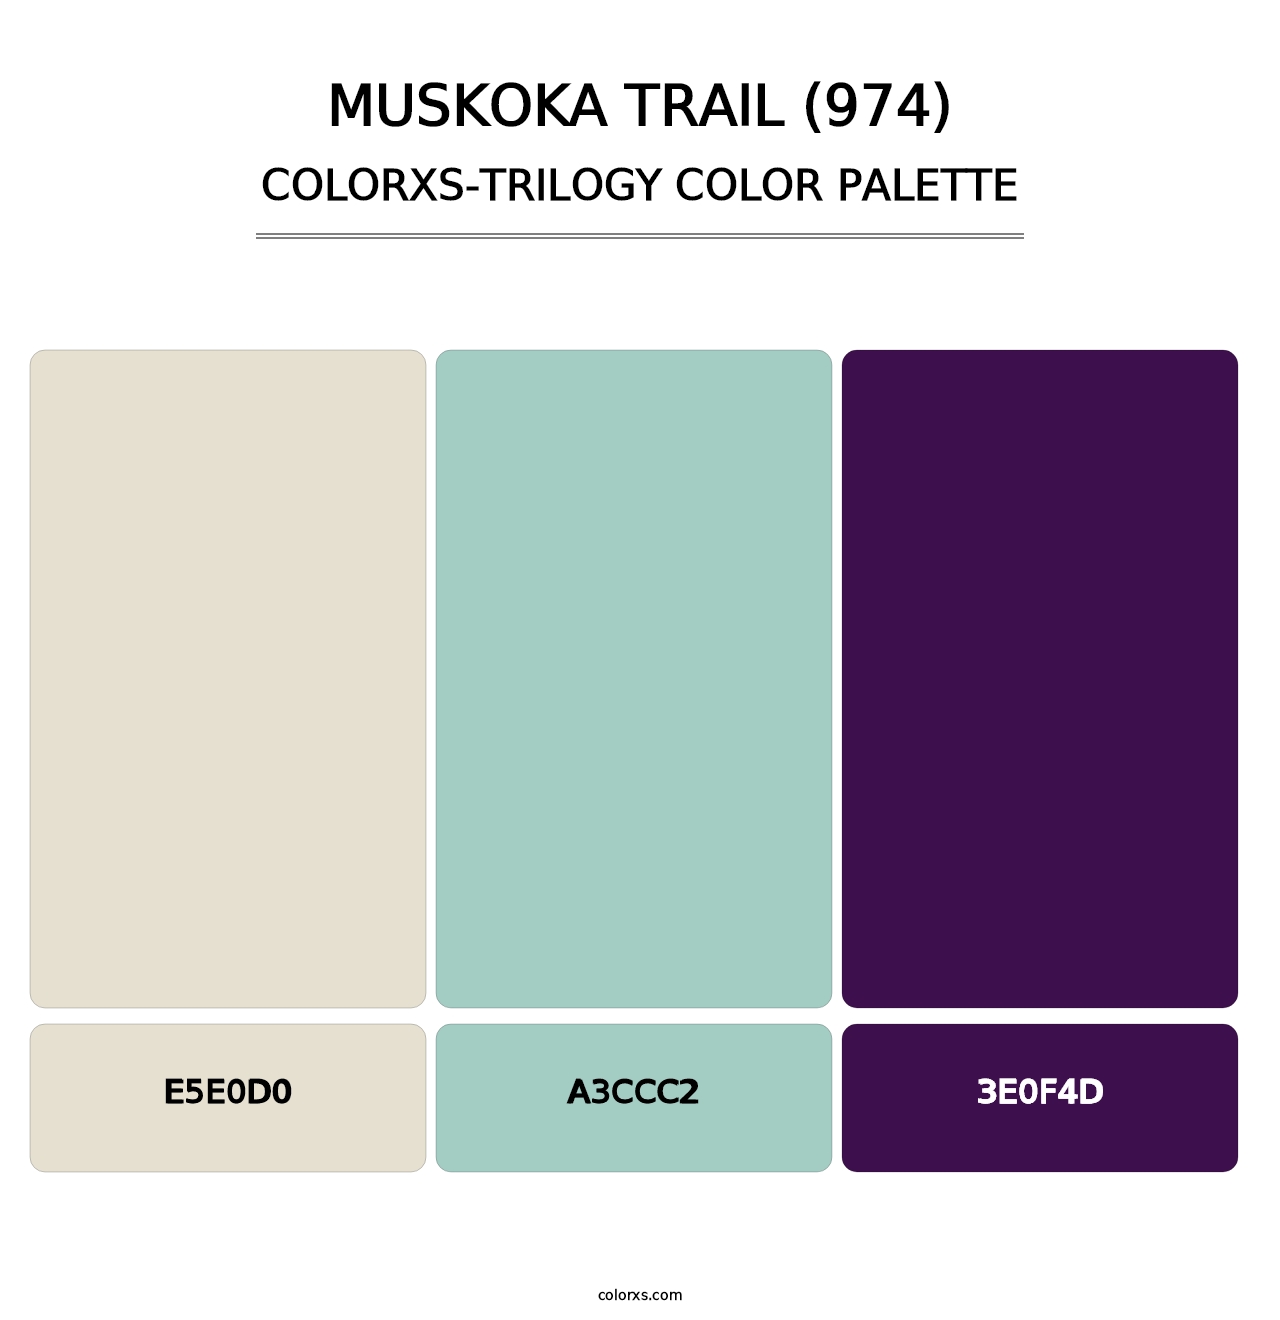 Muskoka Trail (974) - Colorxs Trilogy Palette